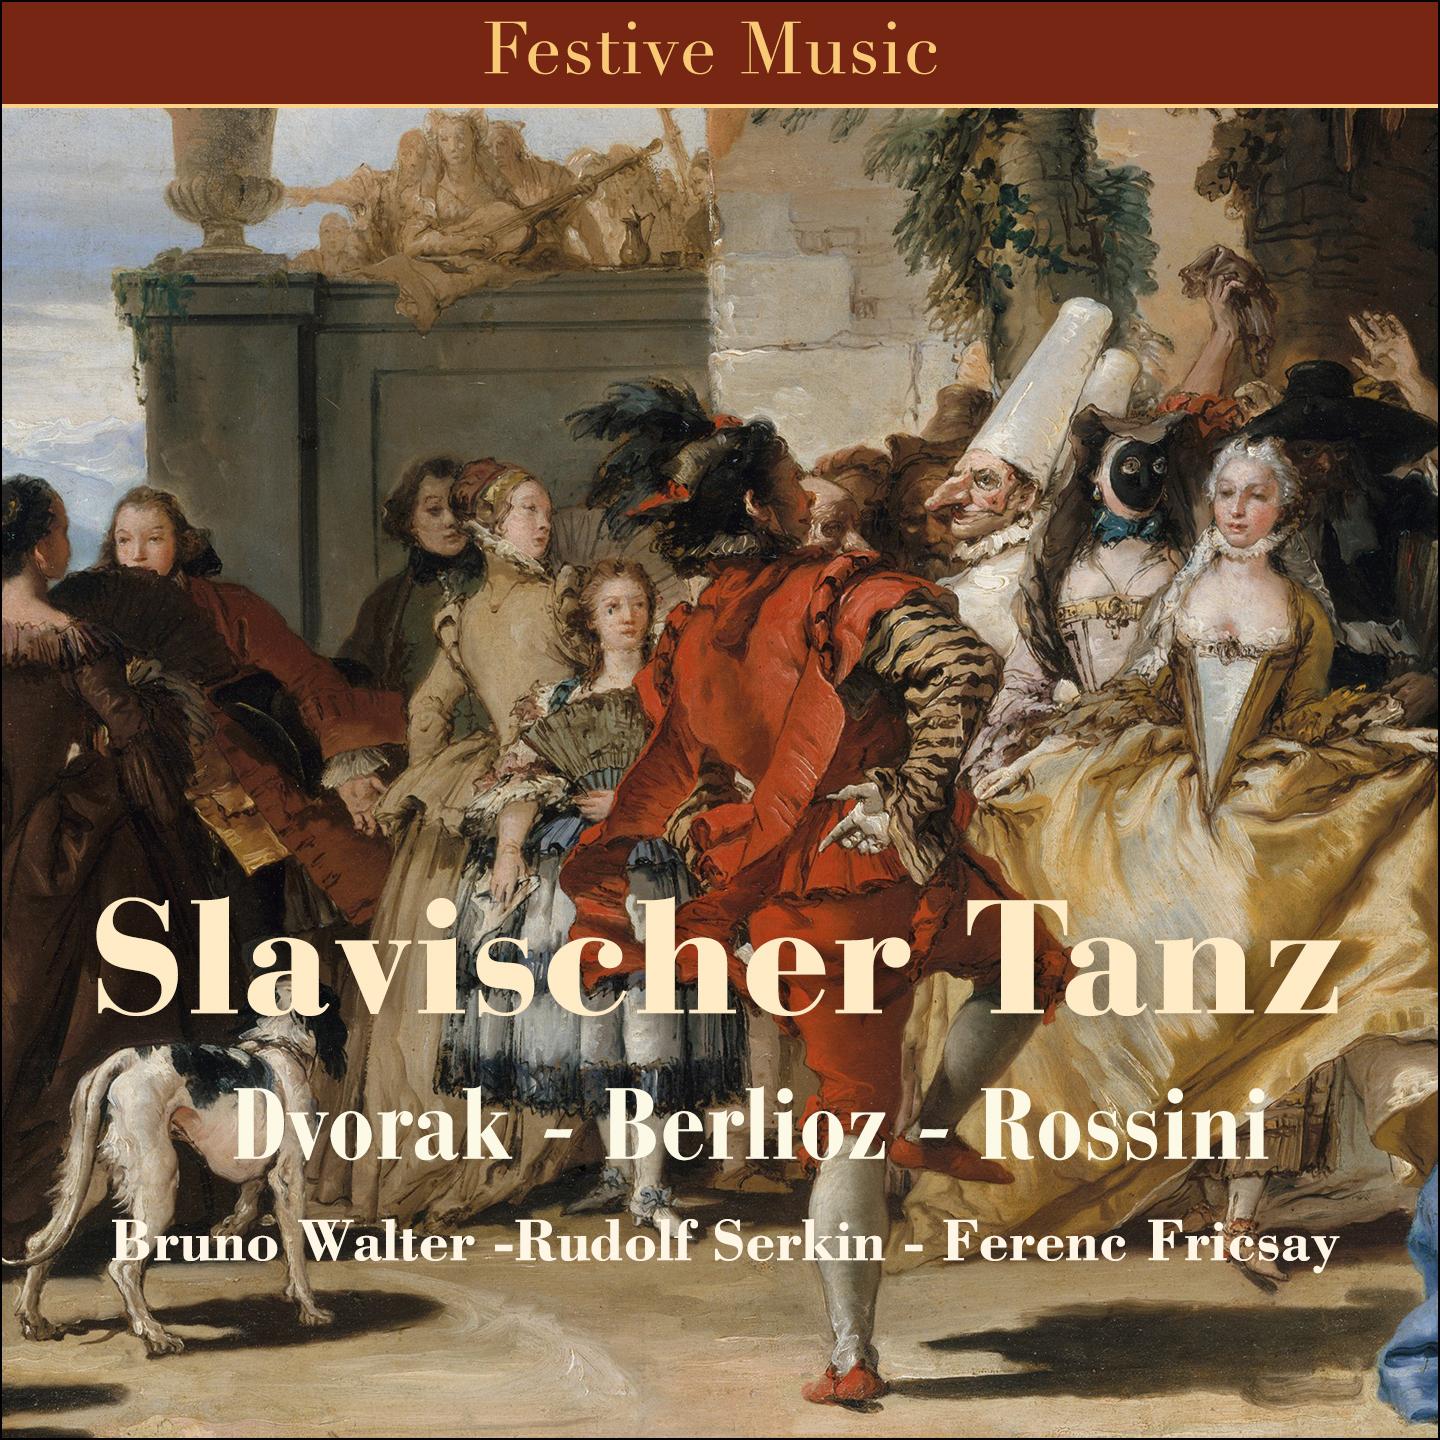 Slawische Tänze, Op. 46: No. 8 in G Minor, Furiant